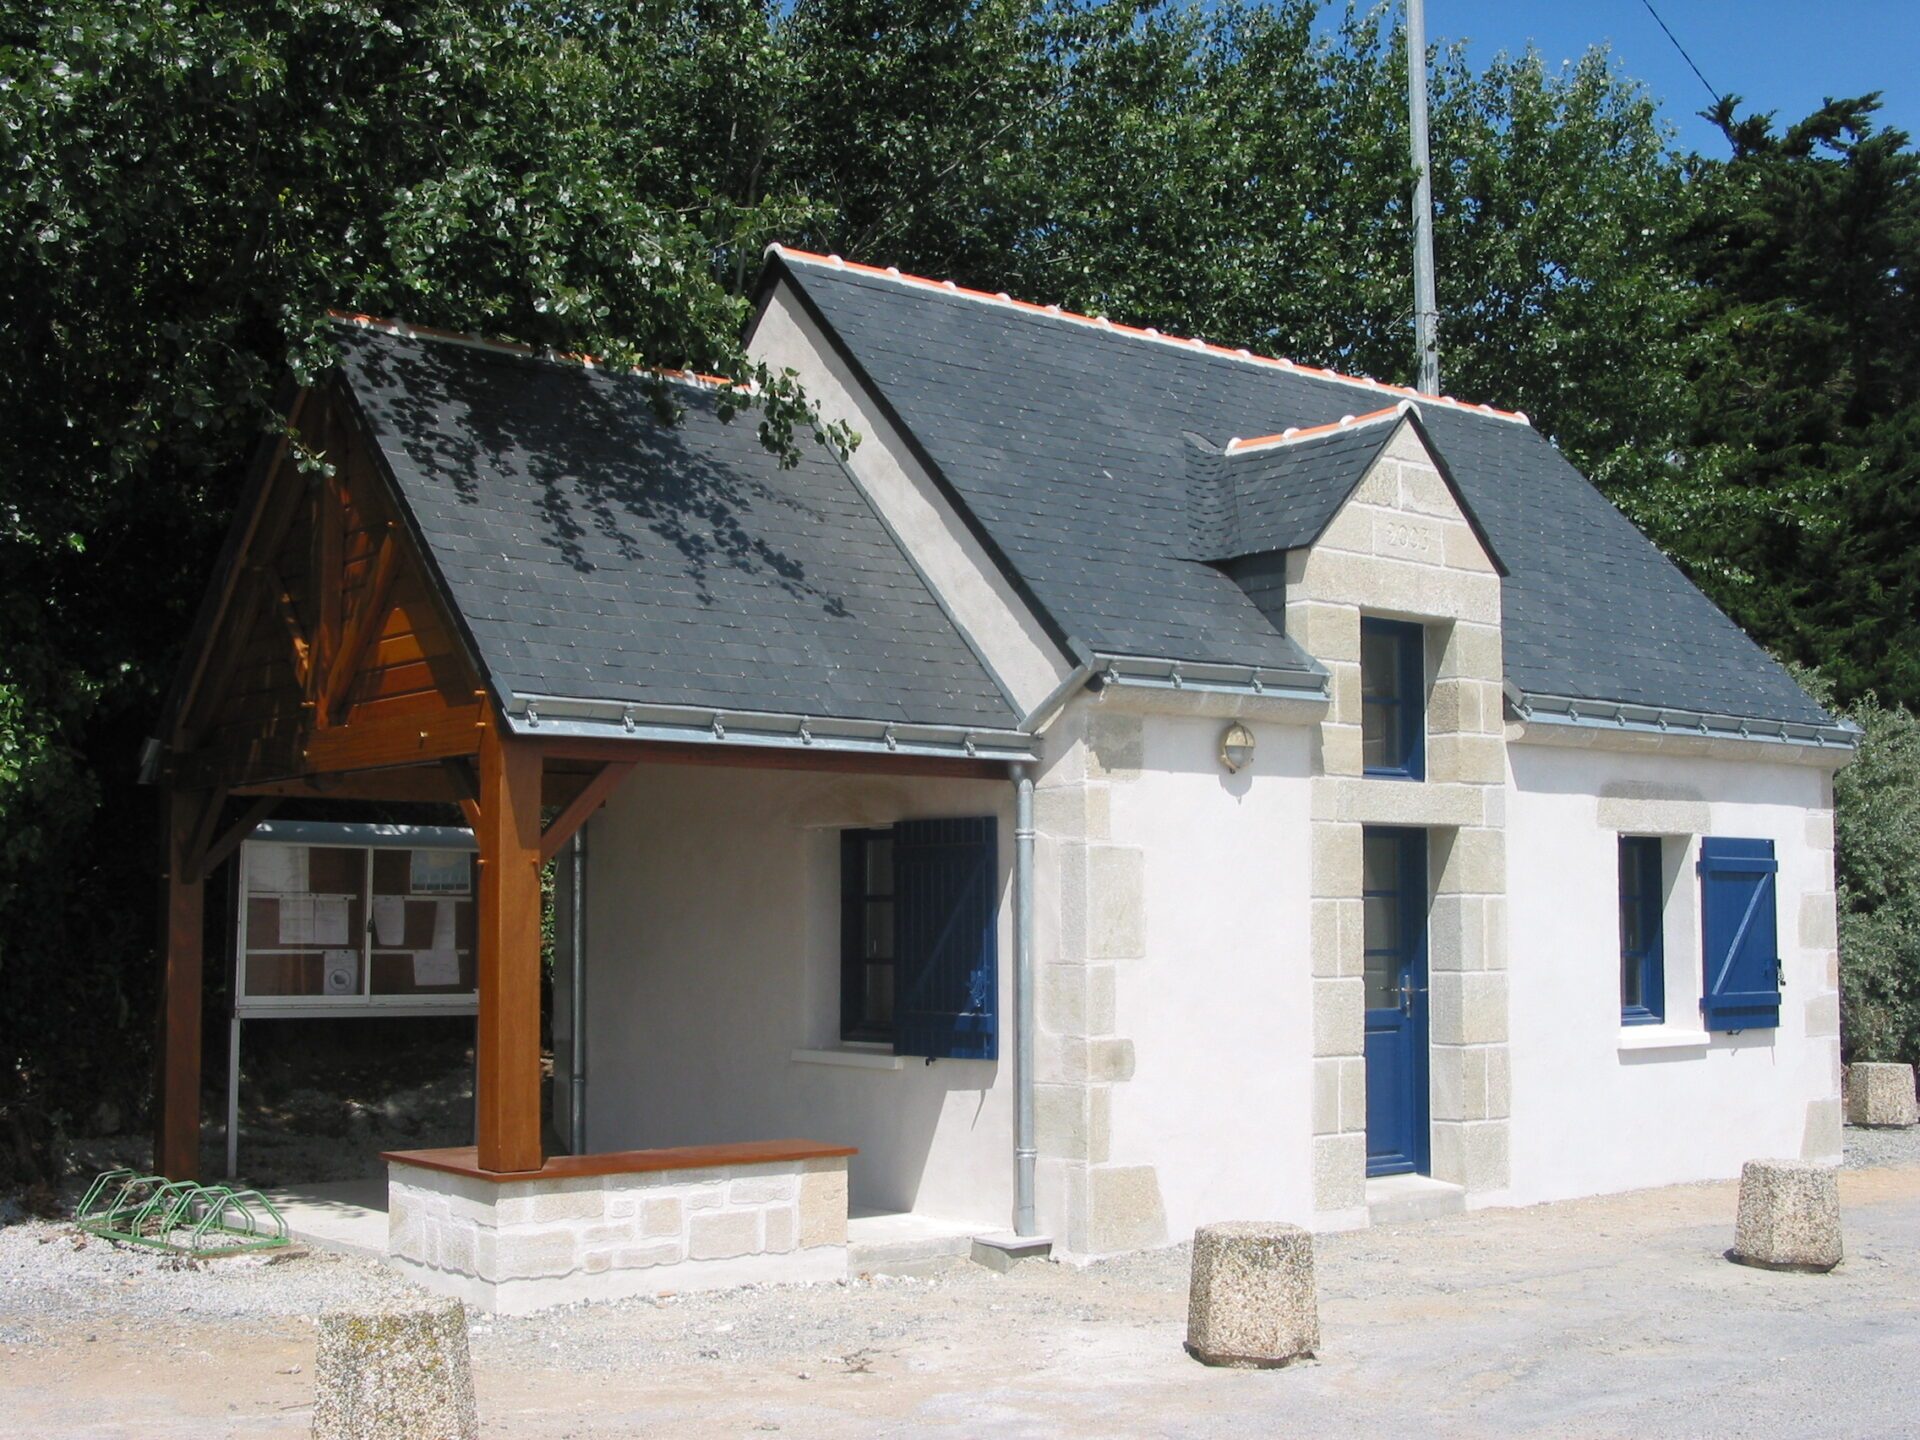 Maison avec parement en pierres, toit en ardoise et menuiseries en bois foncé